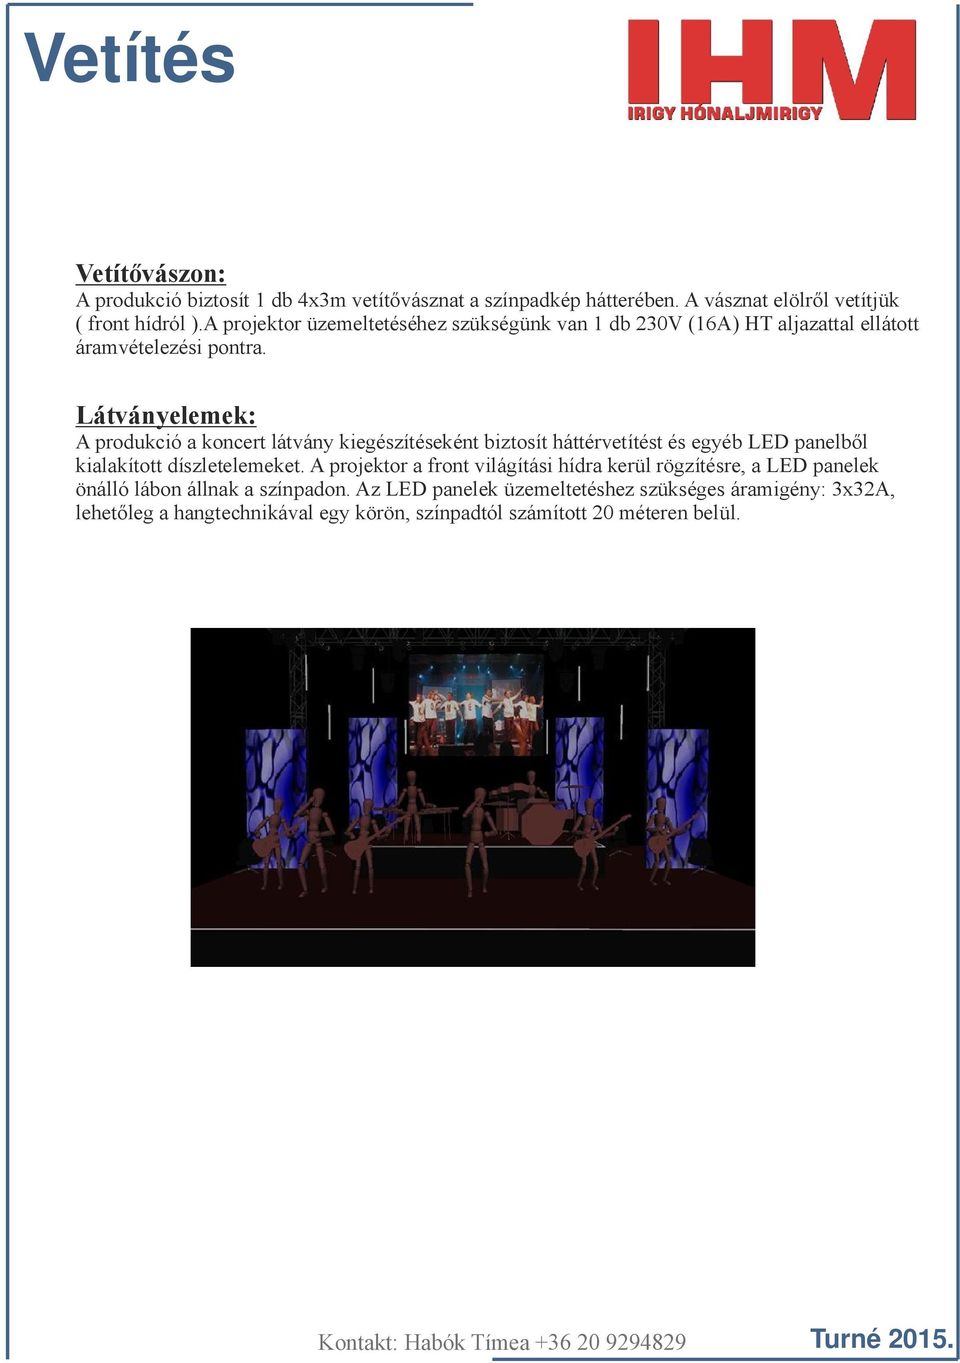 Látványelemek: A produkció a koncert látvány kiegészítéseként biztosít háttérvetítést és egyéb LED panelből kialakított díszletelemeket.